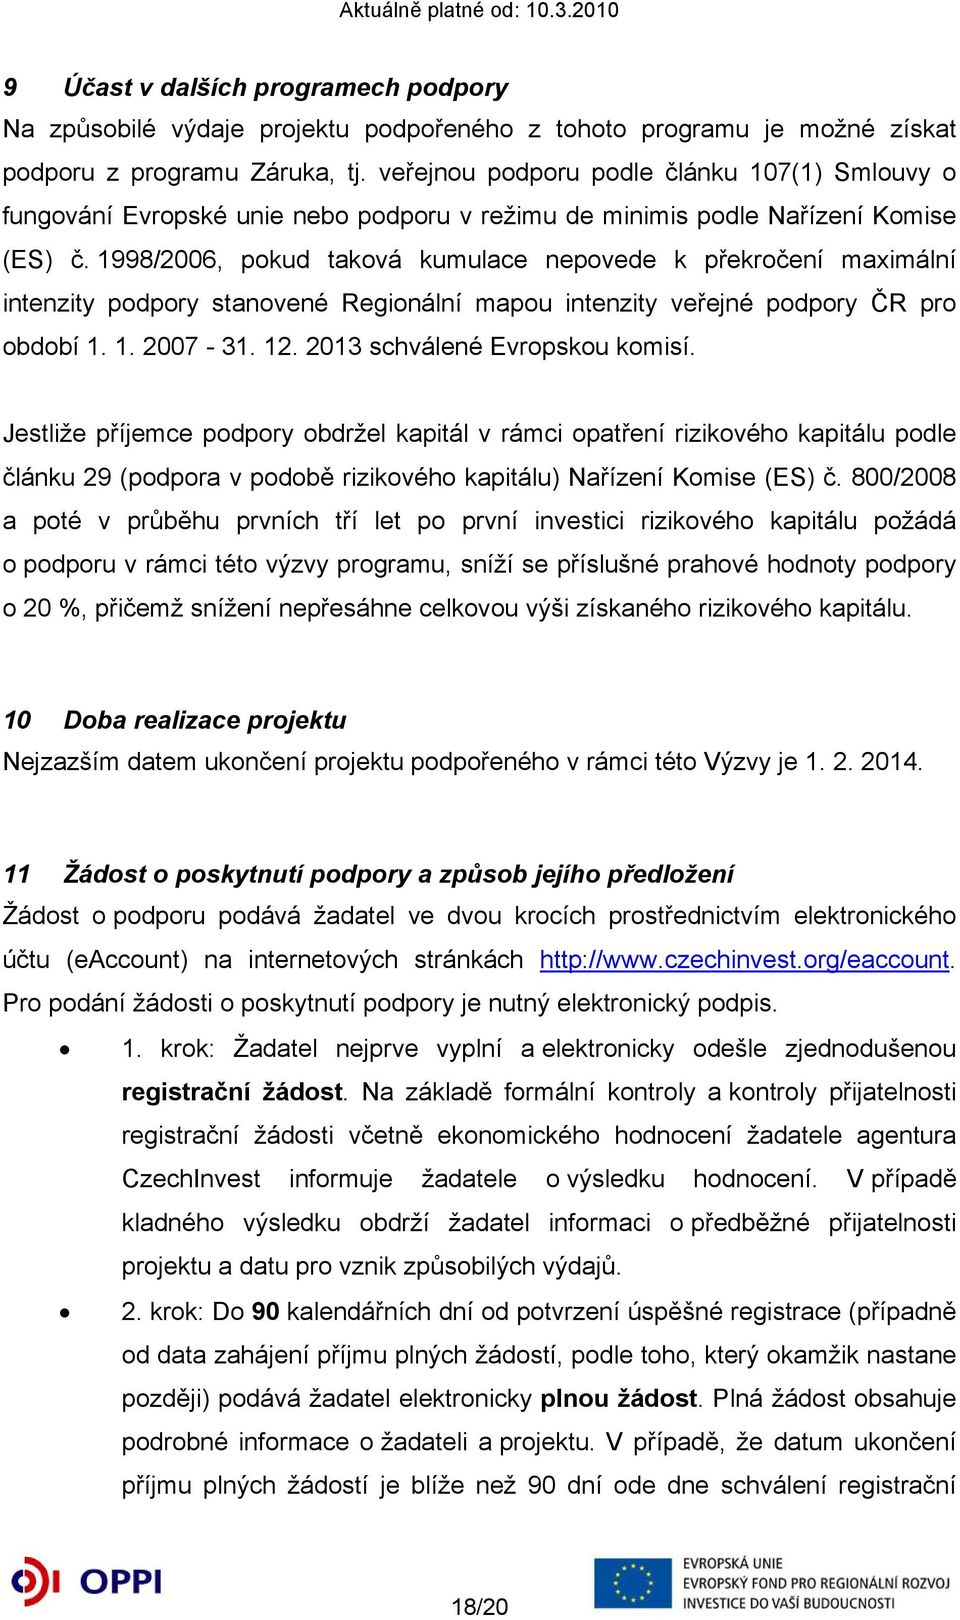 1998/2006, pokud taková kumulace nepovede k překročení maximální intenzity podpory stanovené Regionální mapou intenzity veřejné podpory ČR pro období 1. 1. 2007-31. 12.